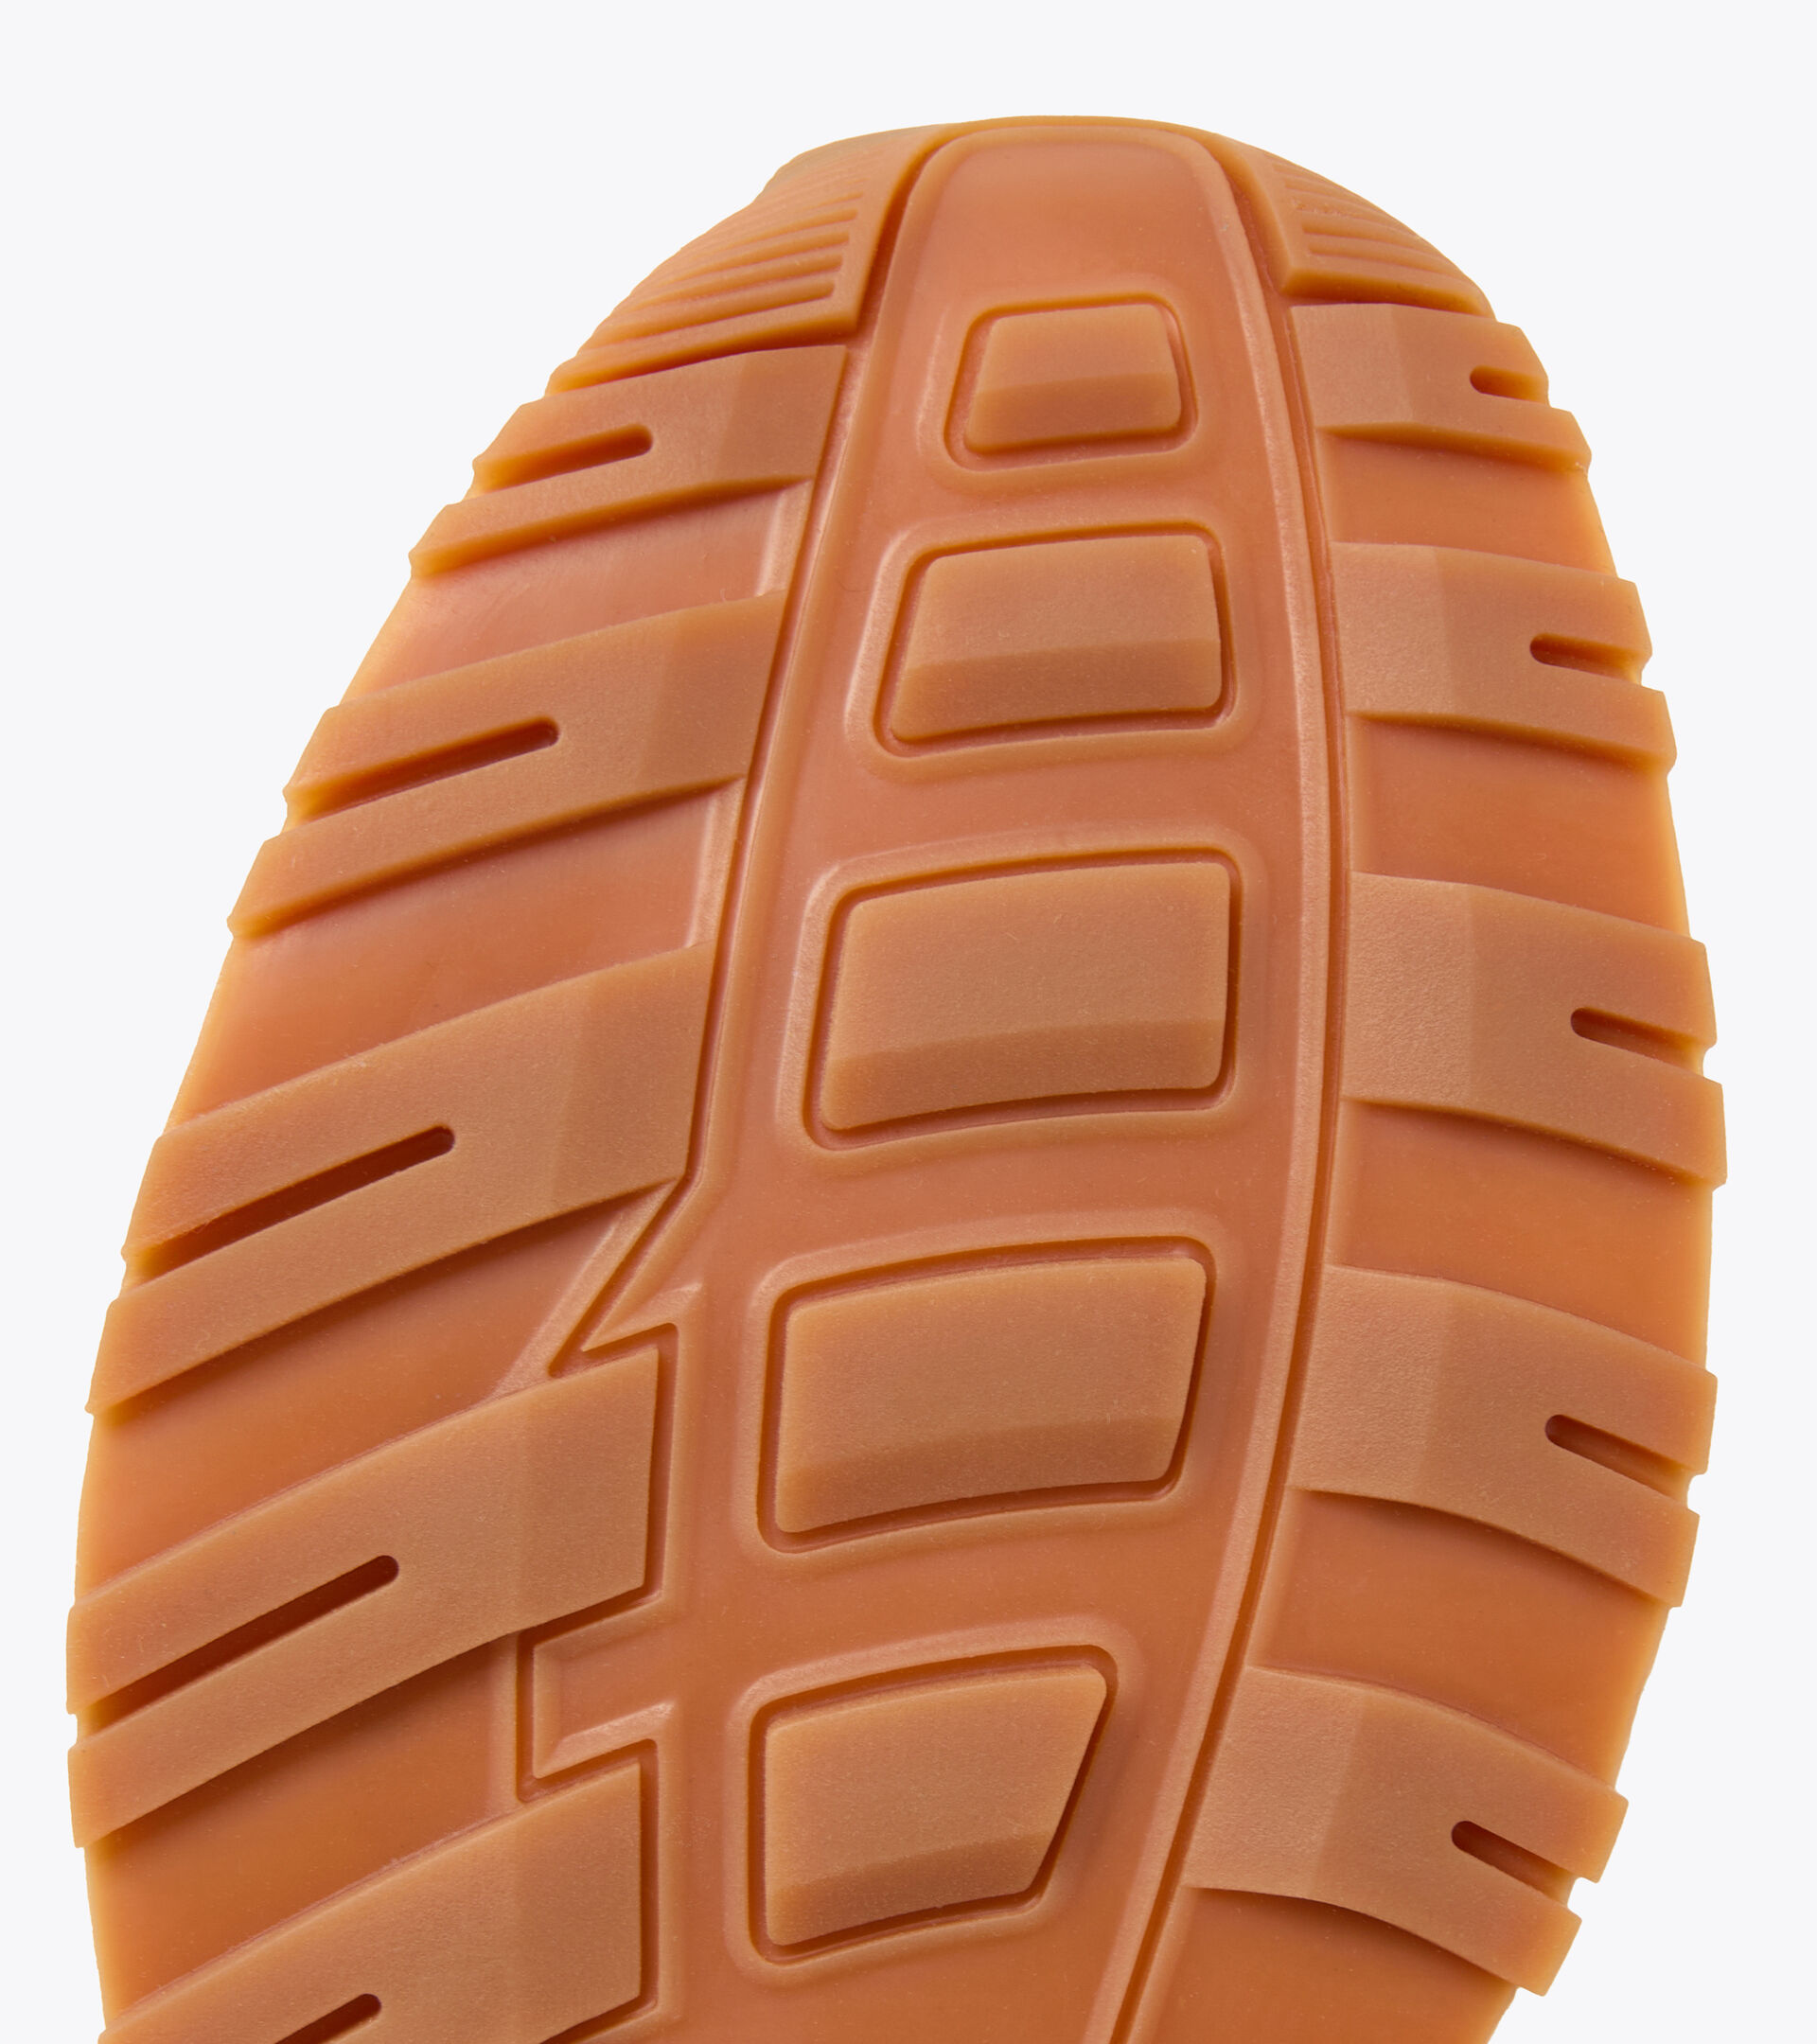 Zapatillas deportivas - Unisex N902 BEIGE HUMO/OLIVINO - Diadora